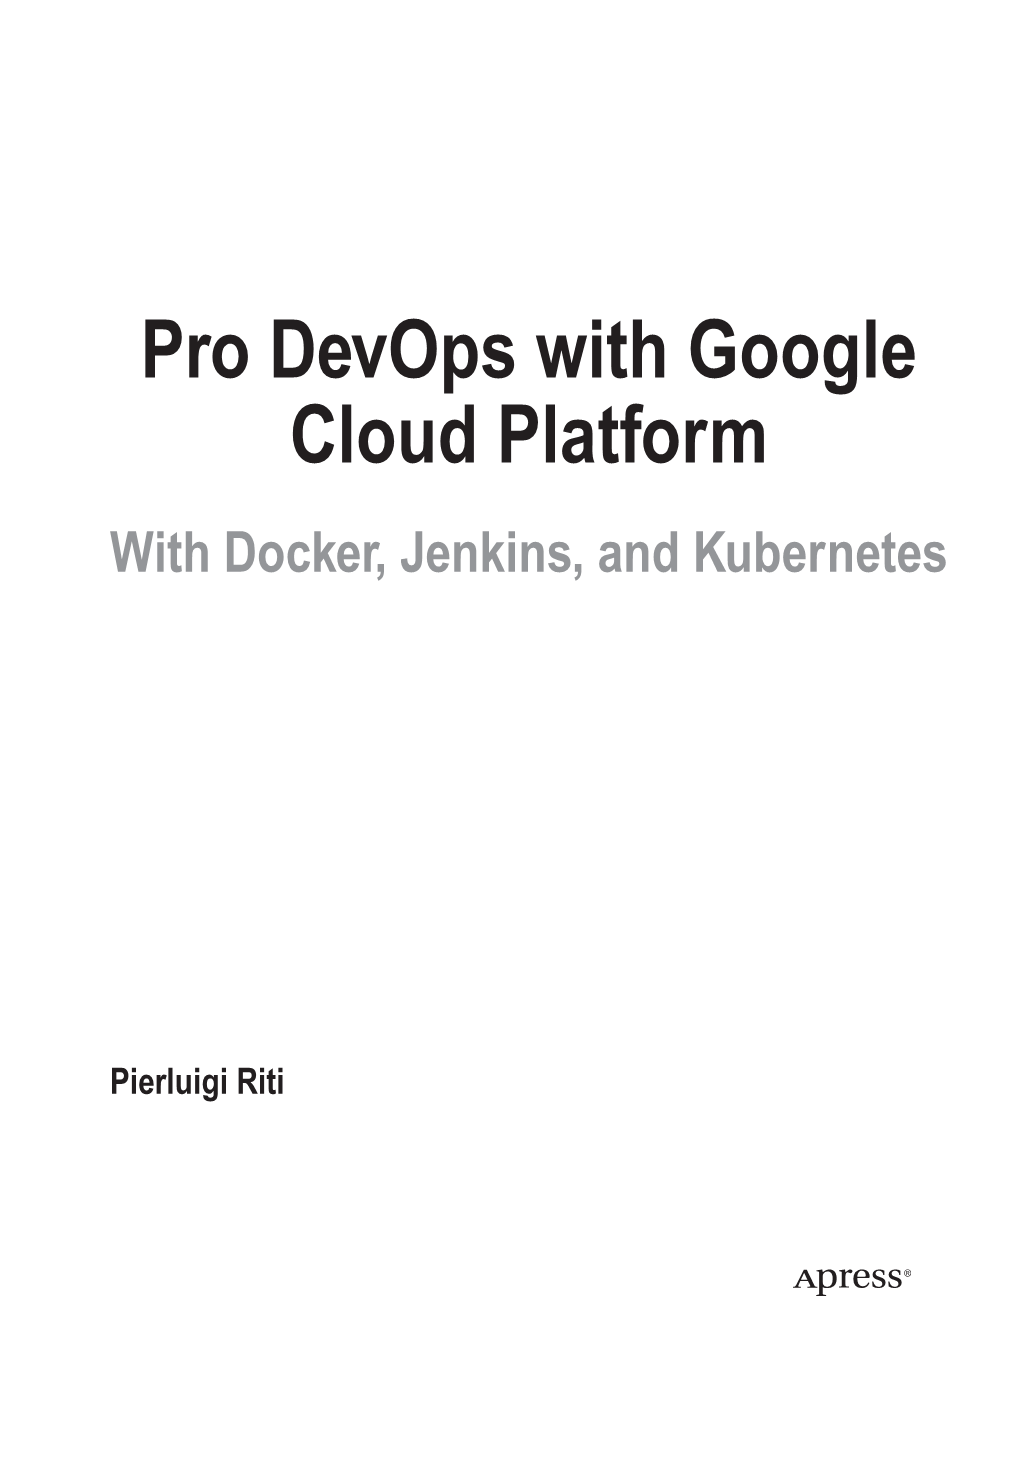 Pro Devops with Google Cloud Platform with Docker, Jenkins, and Kubernetes